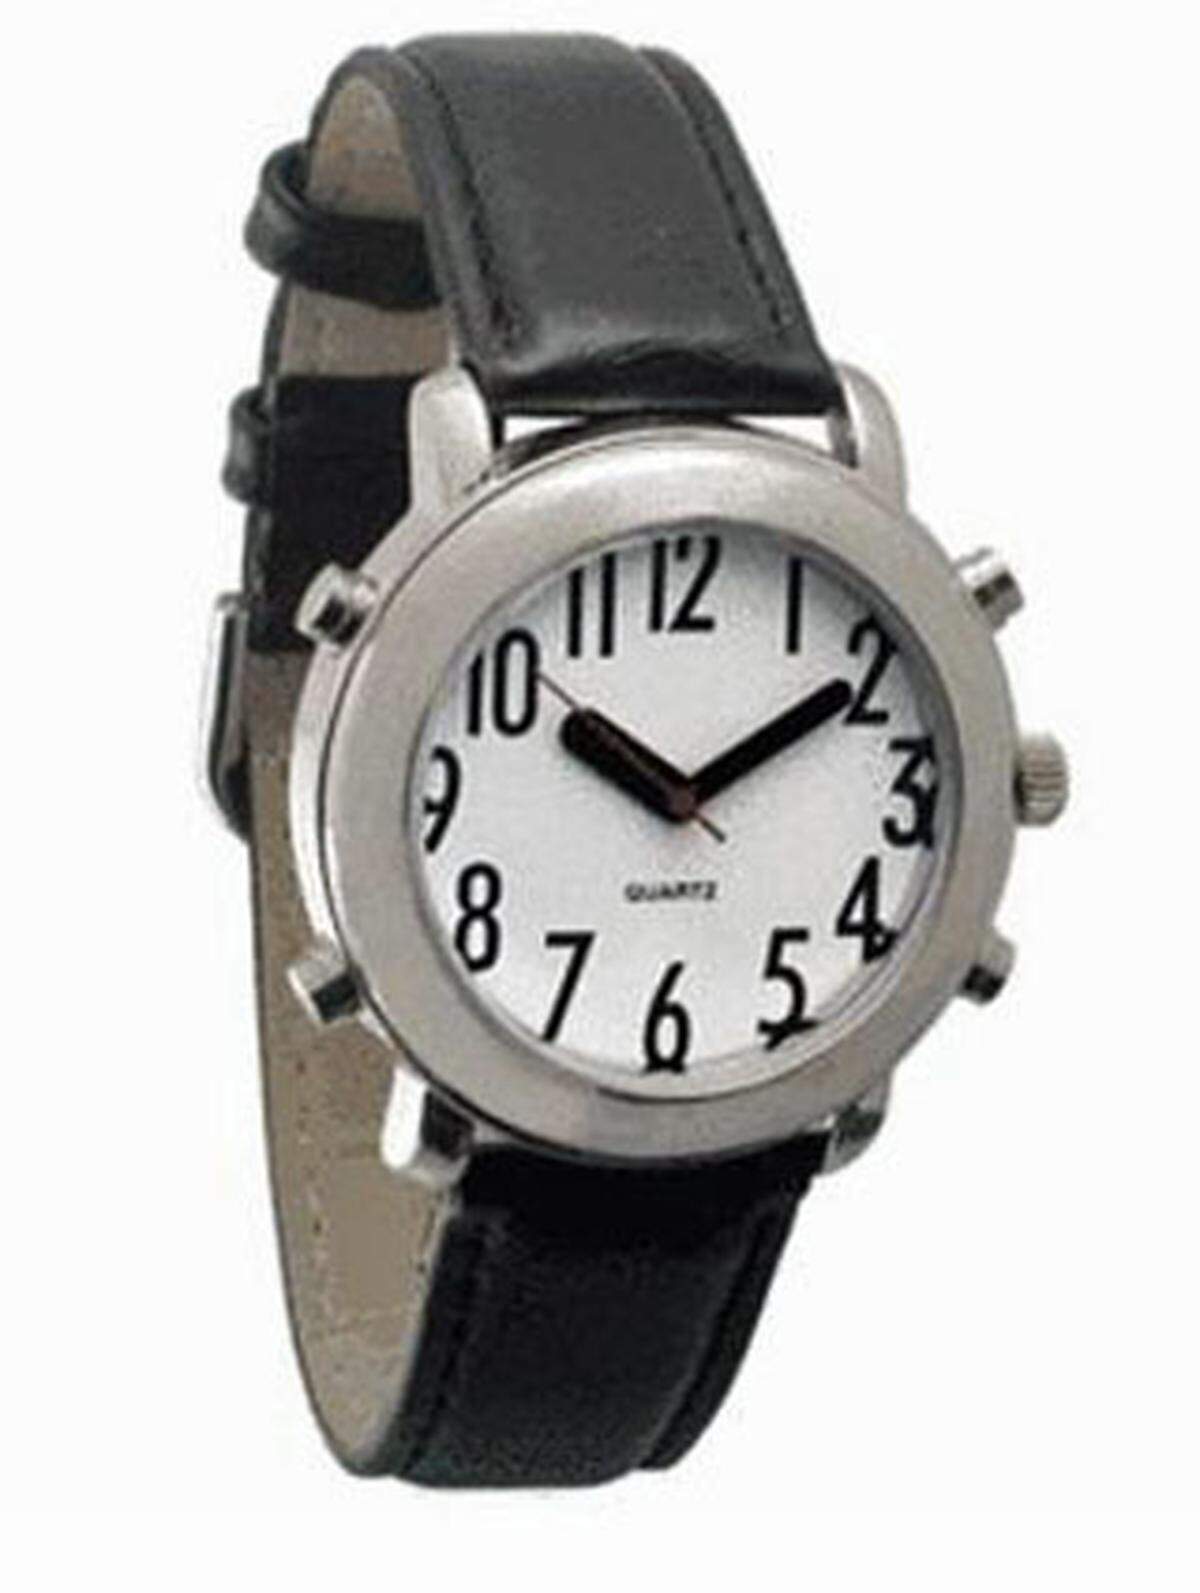 Das Versandhaus  Seniorenland bietet verschiedene Uhren für Senioren an. Sie haben nicht nur große Ziffern, auf Knopfdruck sagen sie auch die aktuelle Zeit an.